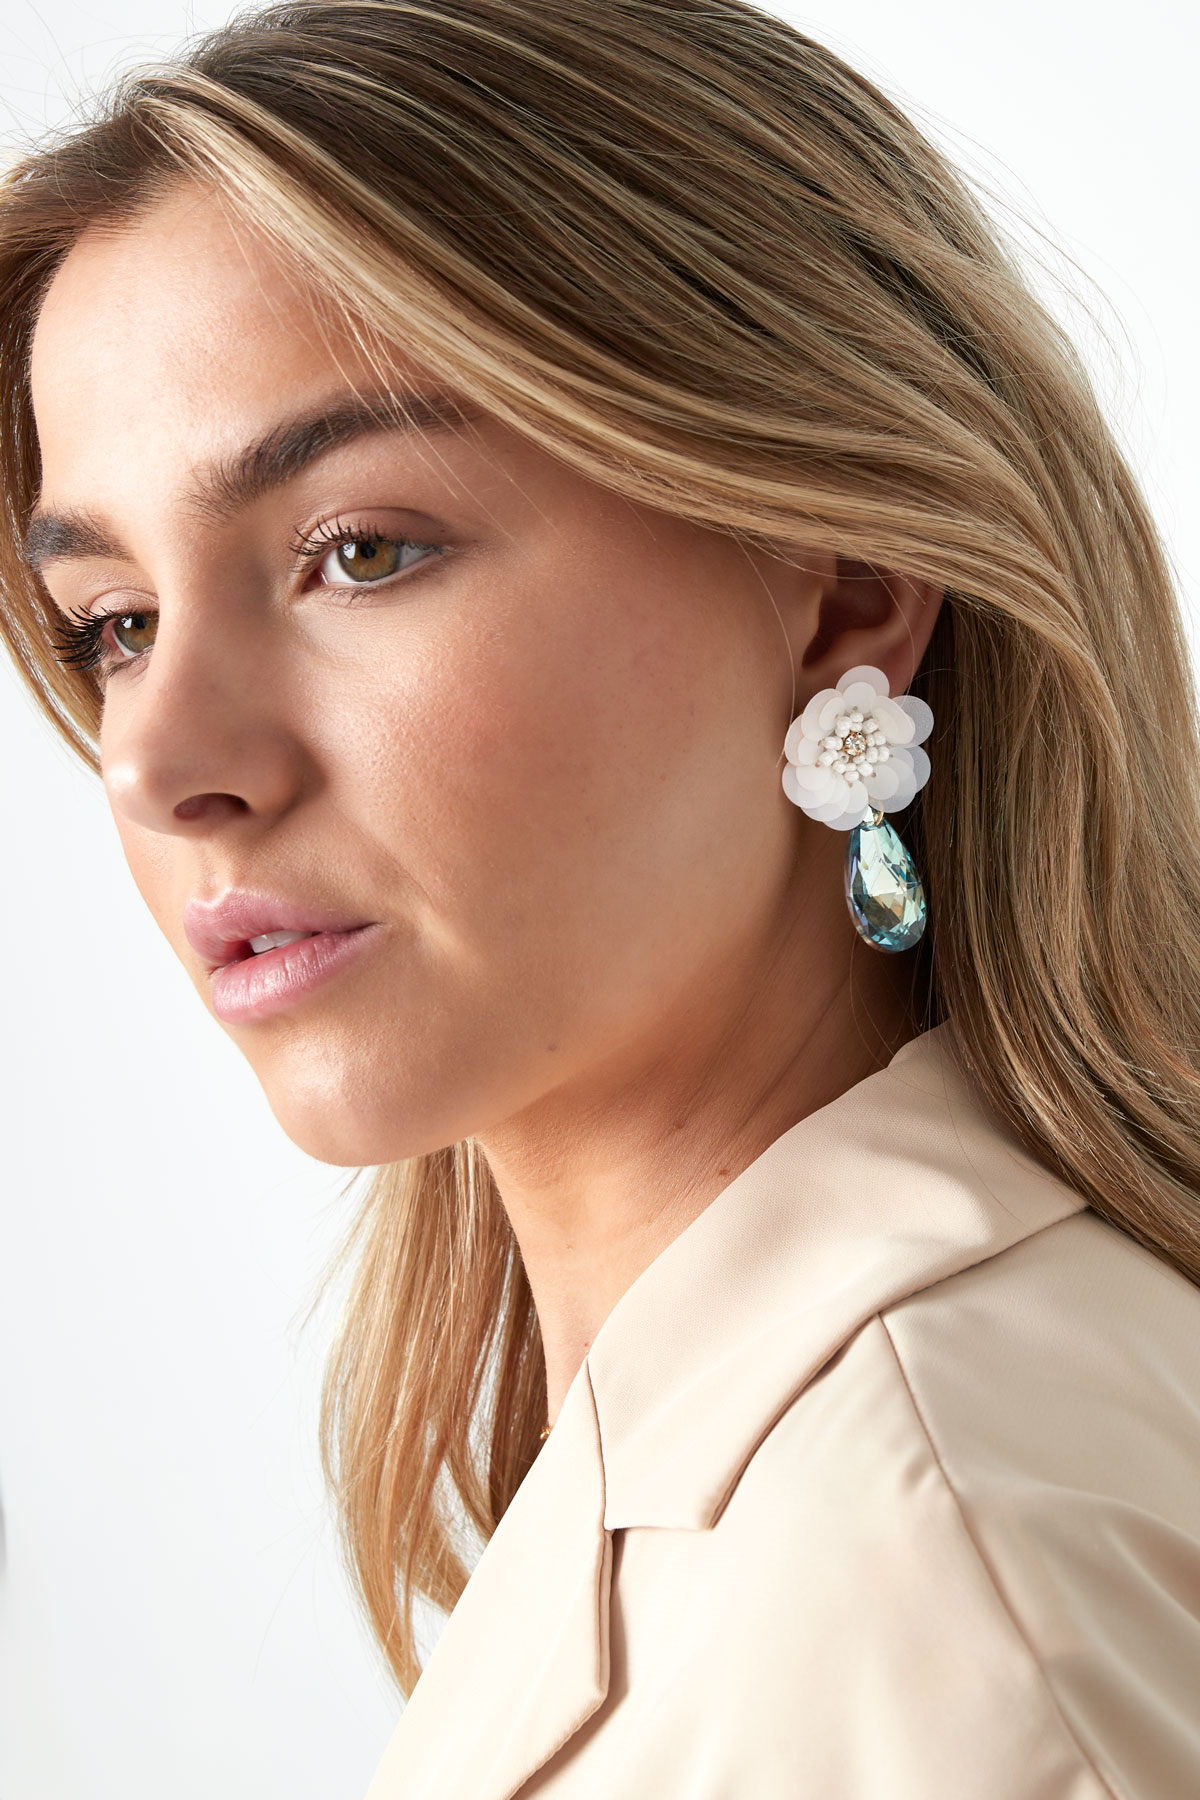 Flower earrings with drop Earrings Picture4